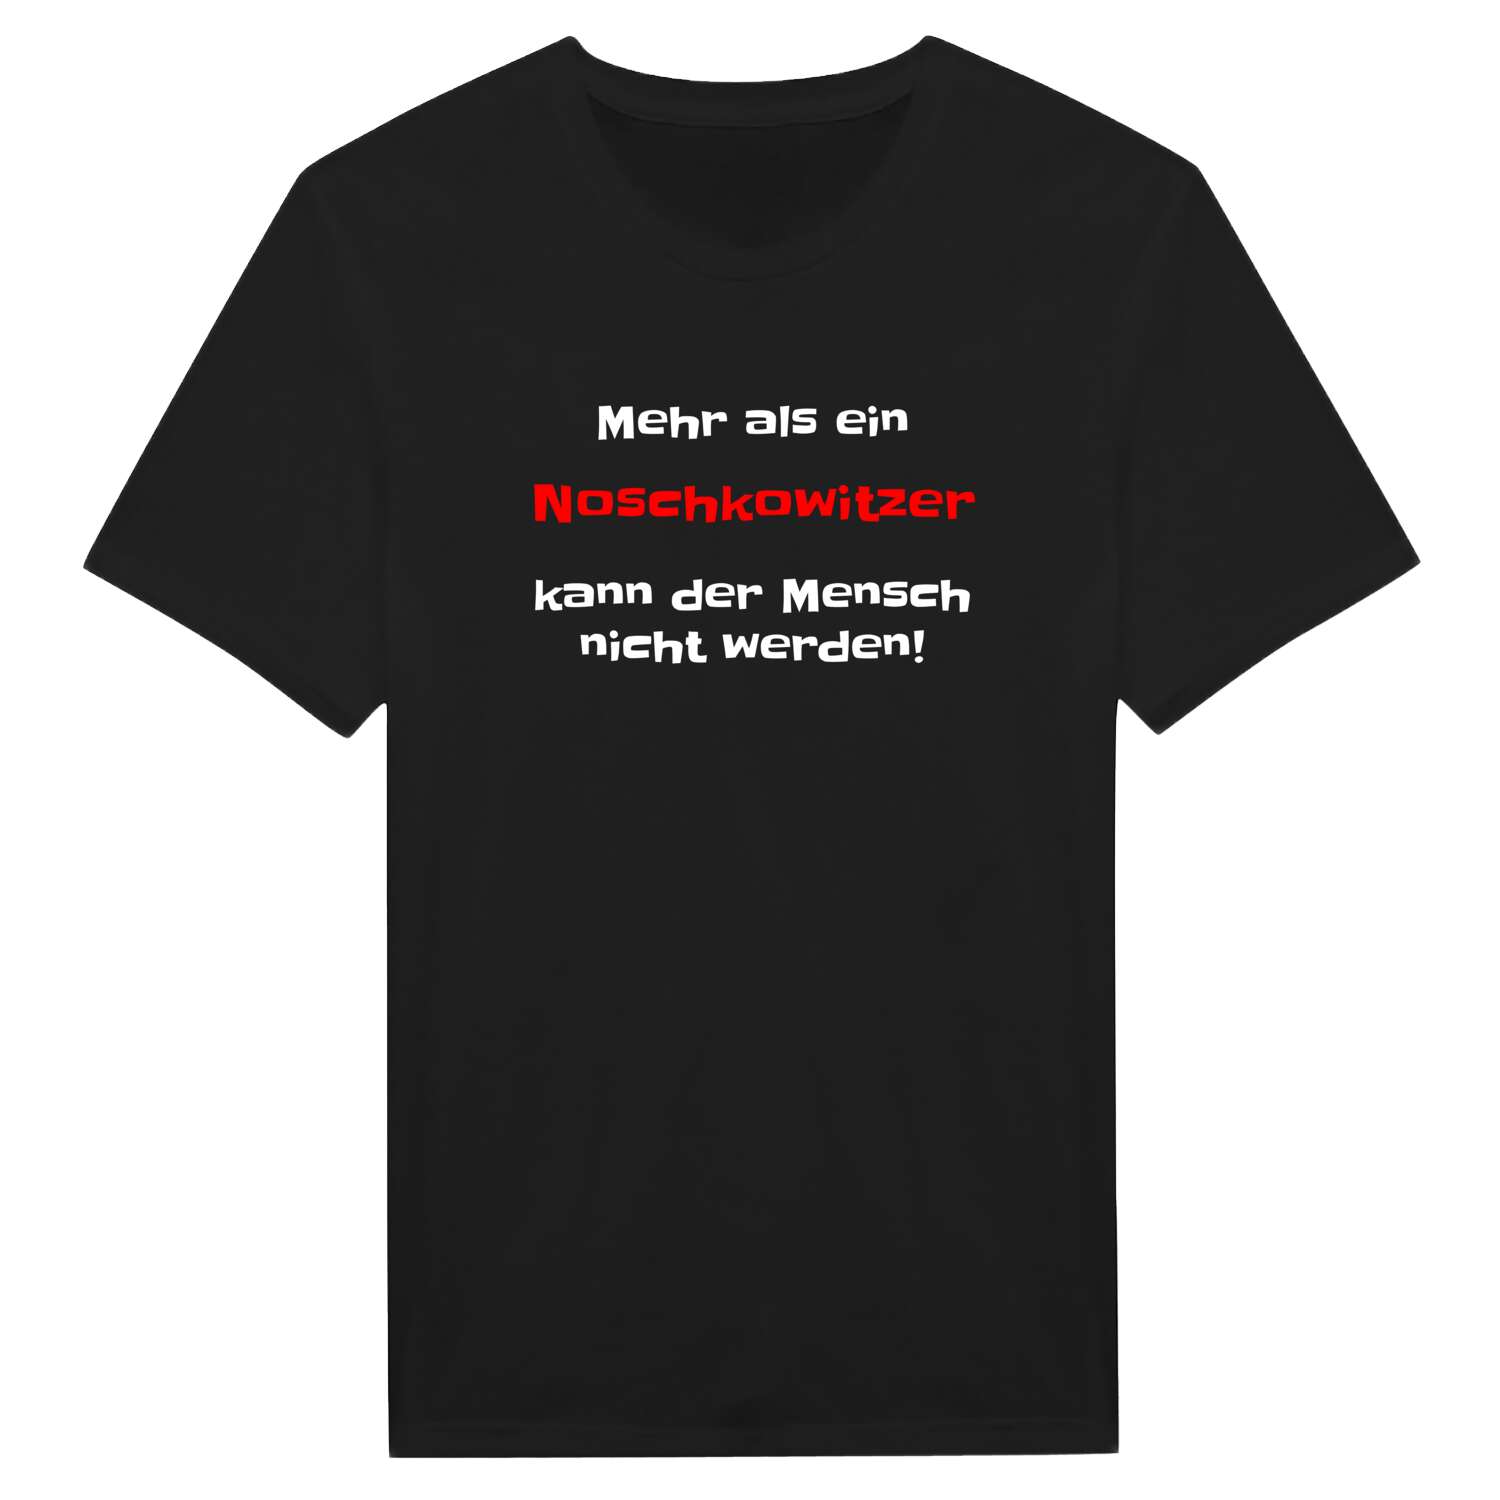 Noschkowitz T-Shirt »Mehr als ein«